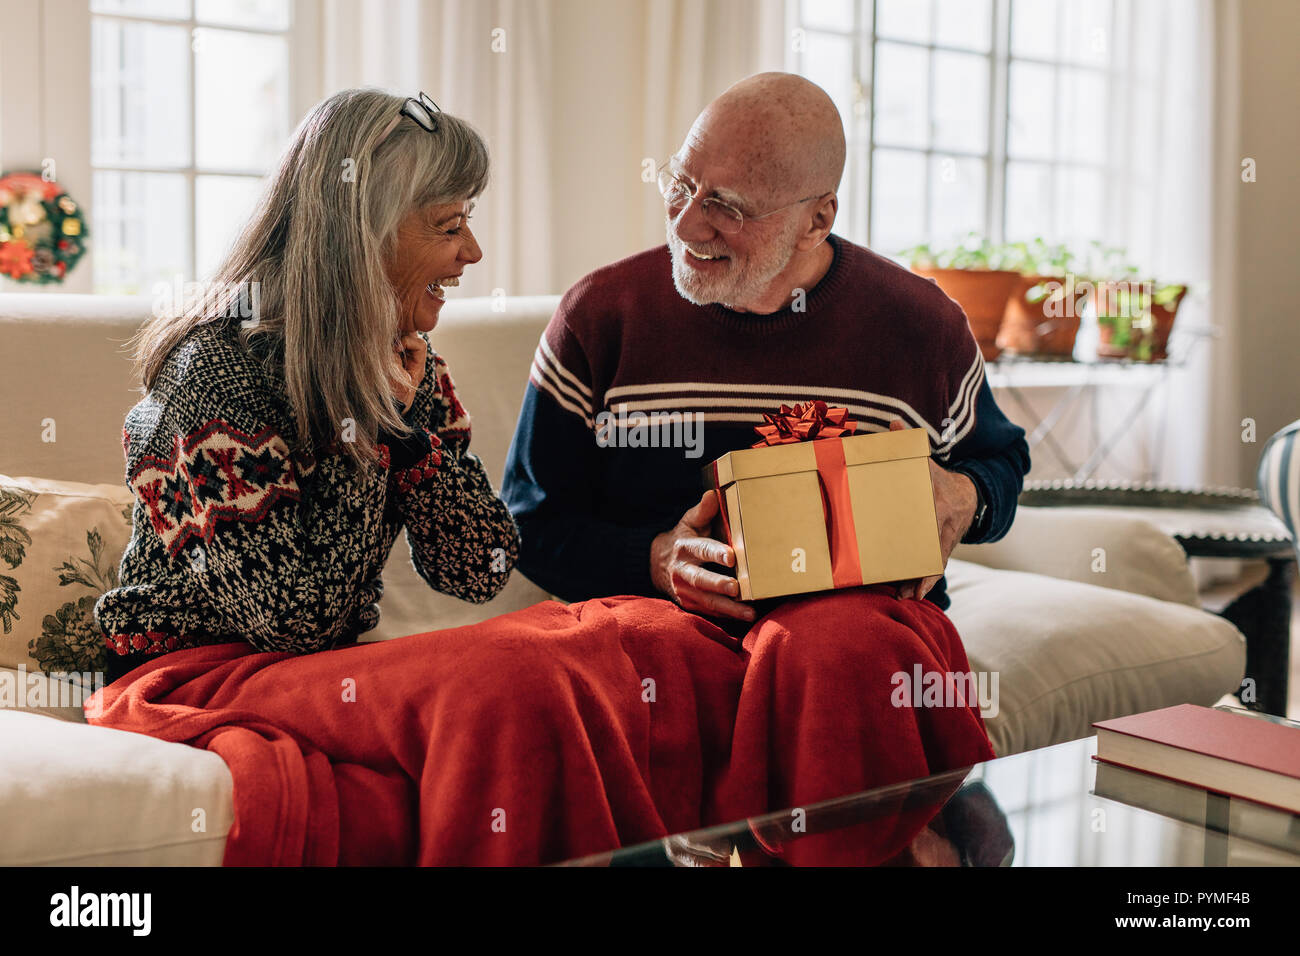 Älterer Mann, ein Weihnachtsgeschenk für seine Frau. Alter Mann saß auf der  Couch mit seiner Frau hält ein Weihnachtsgeschenk in der Hand  Stockfotografie - Alamy